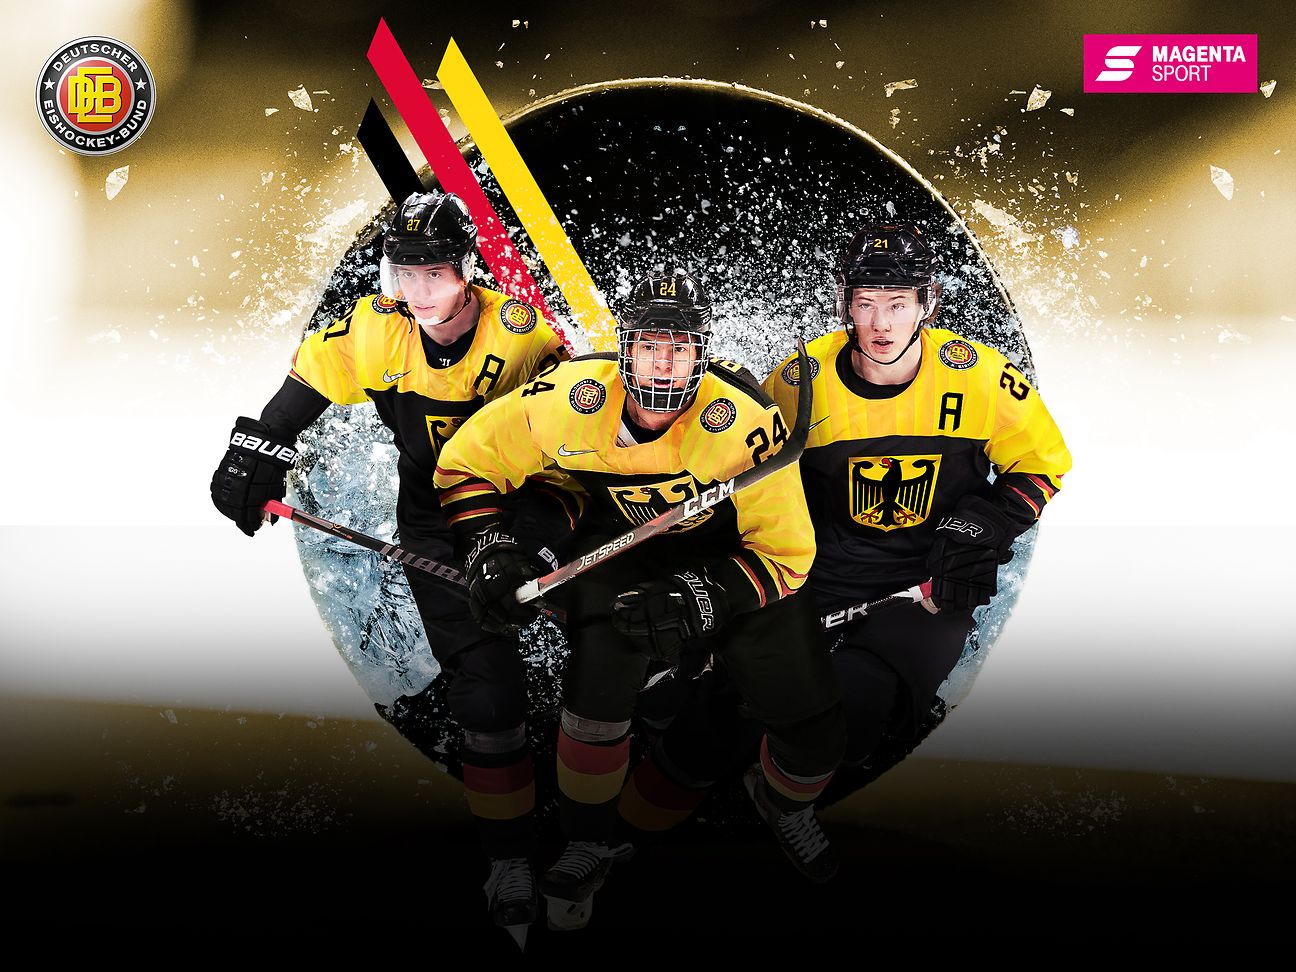 MagentaSport zeigt U20 Eishockey WM in Tschechien Deutsche Telekom